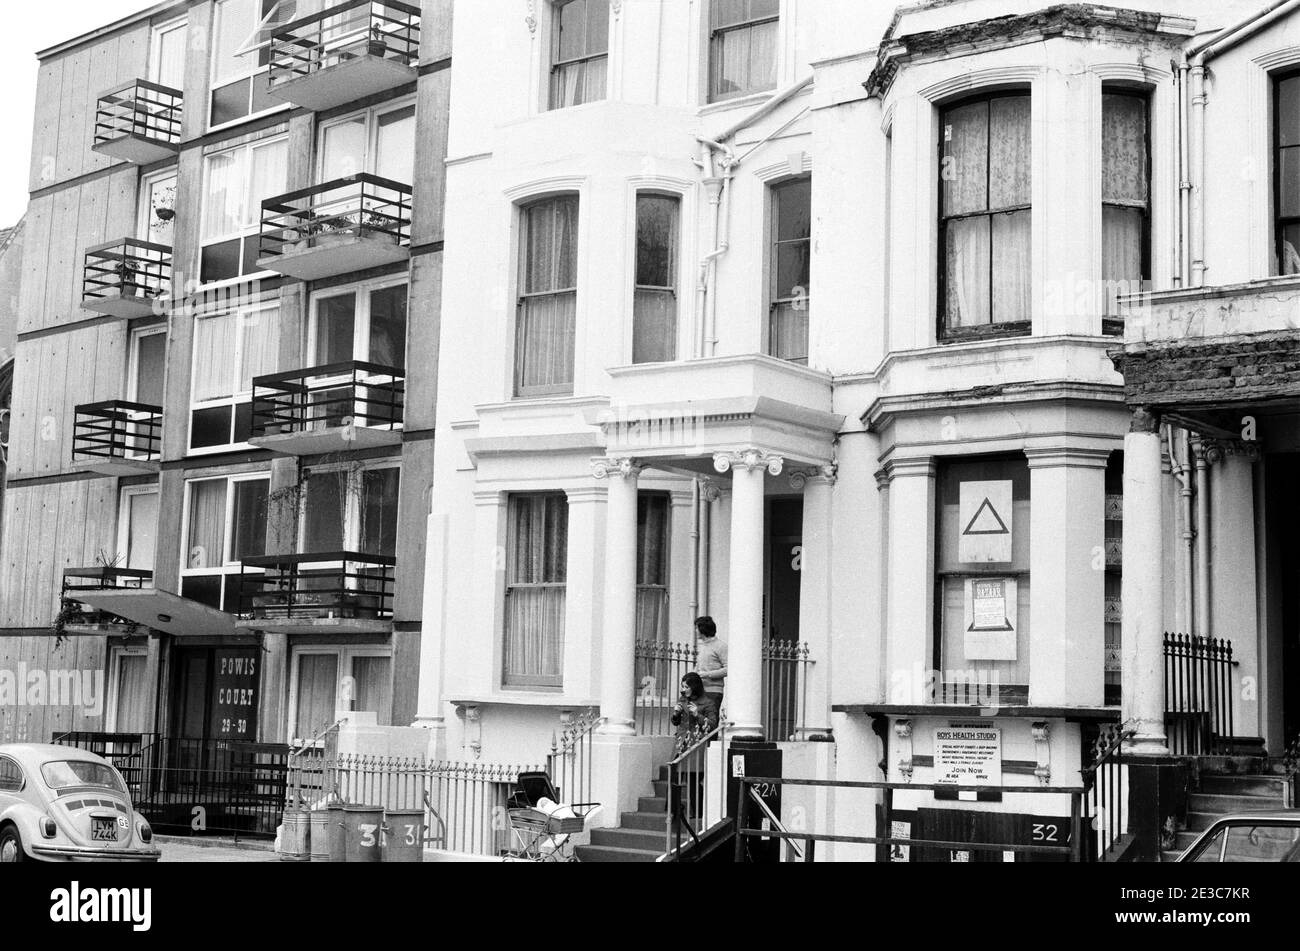 Royaume-Uni, West London, Notting Hill, 1973. Les grandes maisons de quatre étages en ruine et en ruine commencent à être restaurées et redécorées. Appartements modernes à Powis court à gauche. No.32 Powis Square - panneau 'Roys Health Studio'. Affiche dans la fenêtre pour un bazar d'étoile de mornig. Banque D'Images